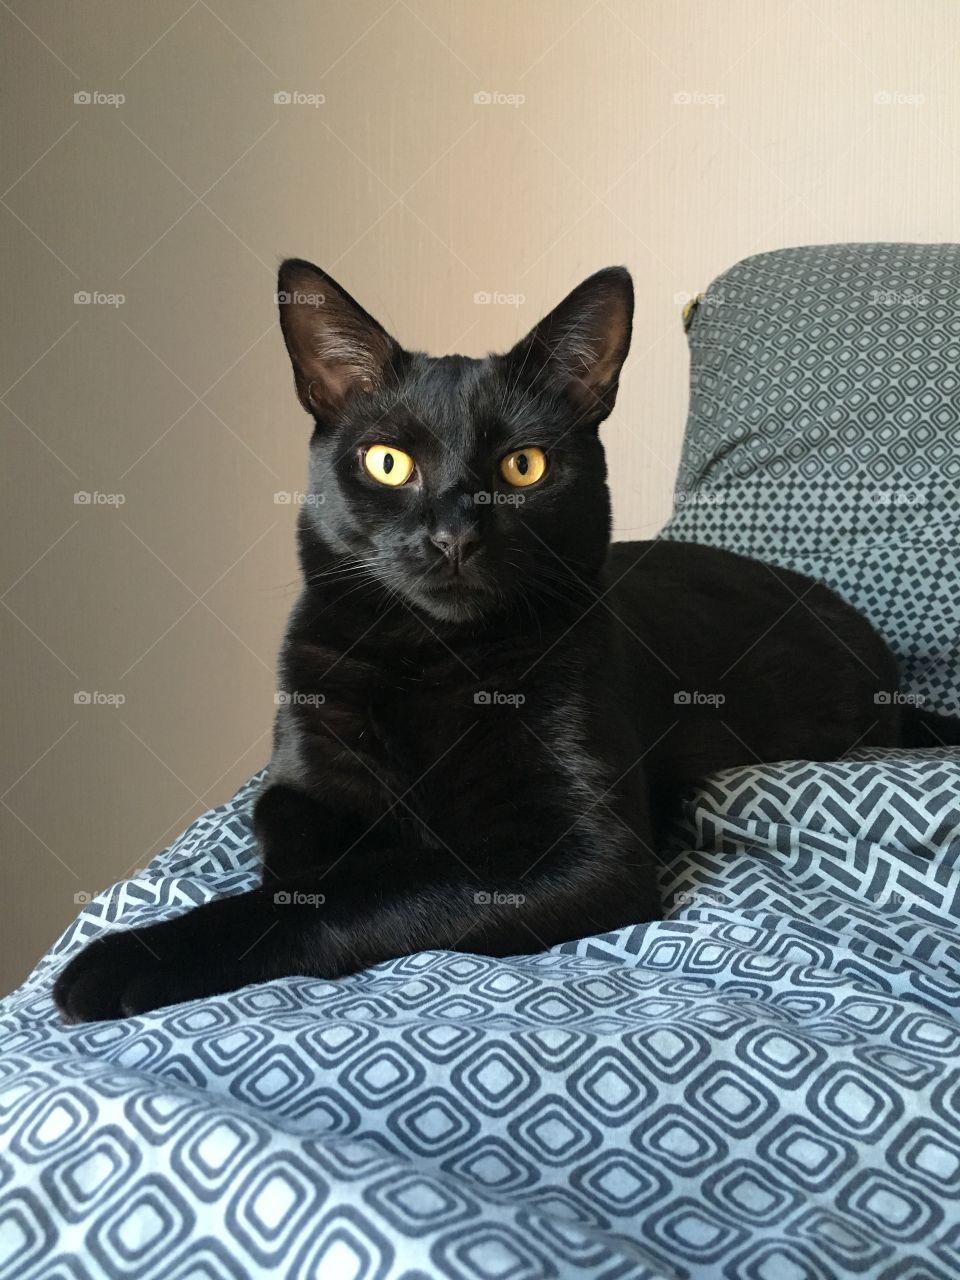 Black cat pose